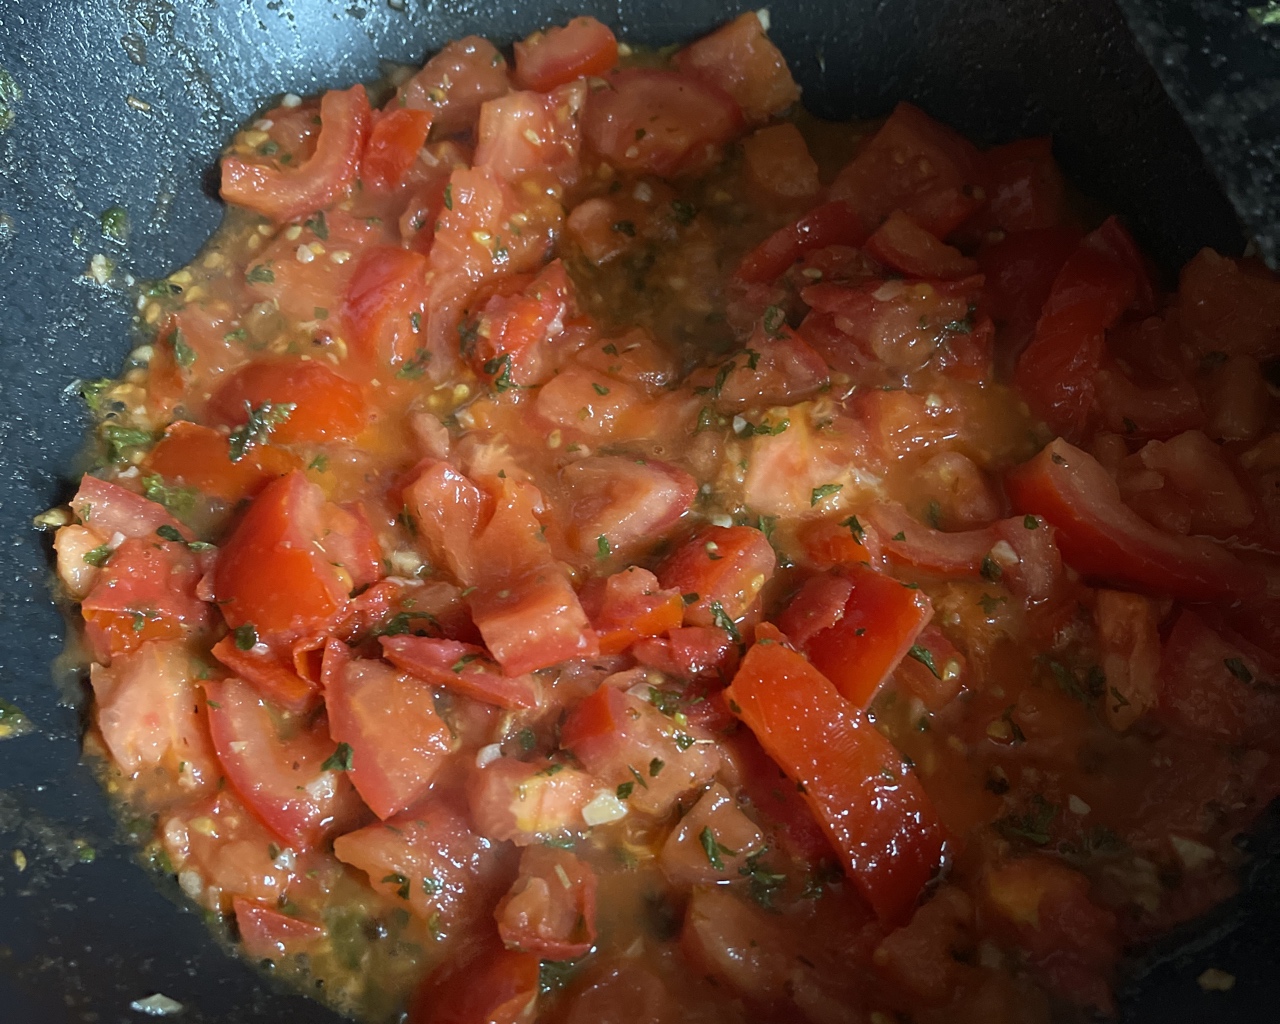 西式番茄炒蛋浓厚番茄酱汁裹欧姆蛋半熟嫩鸡蛋佐蒜味罗勒番茄酱的做法 步骤2